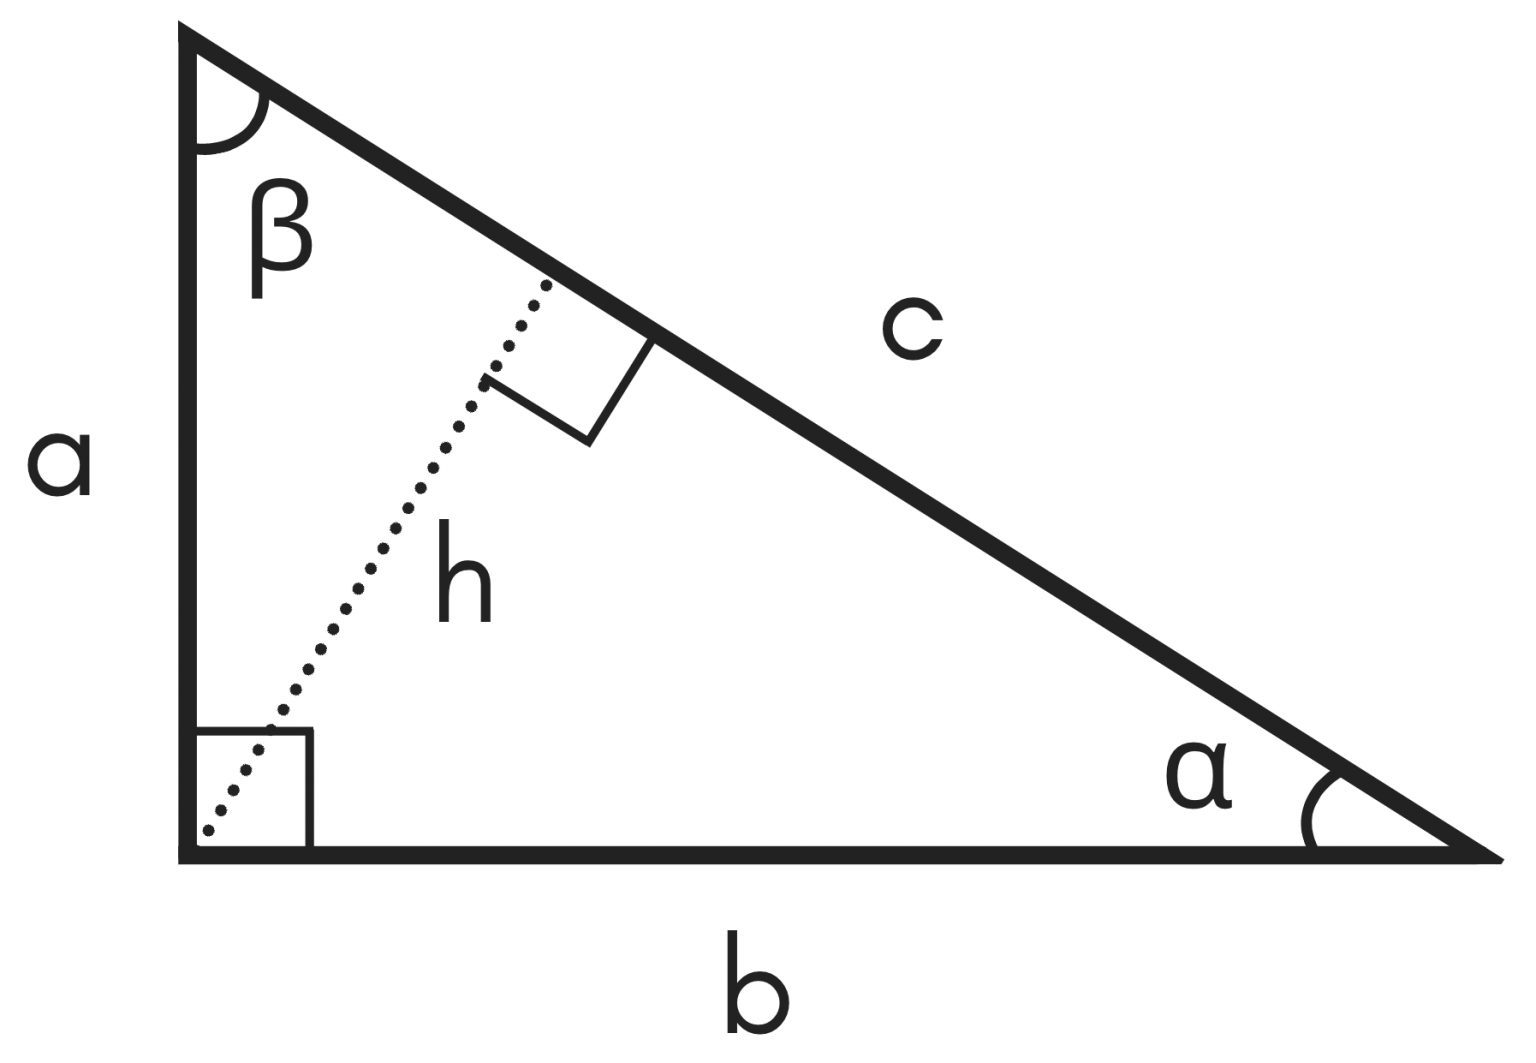 isosceles right triangle formula